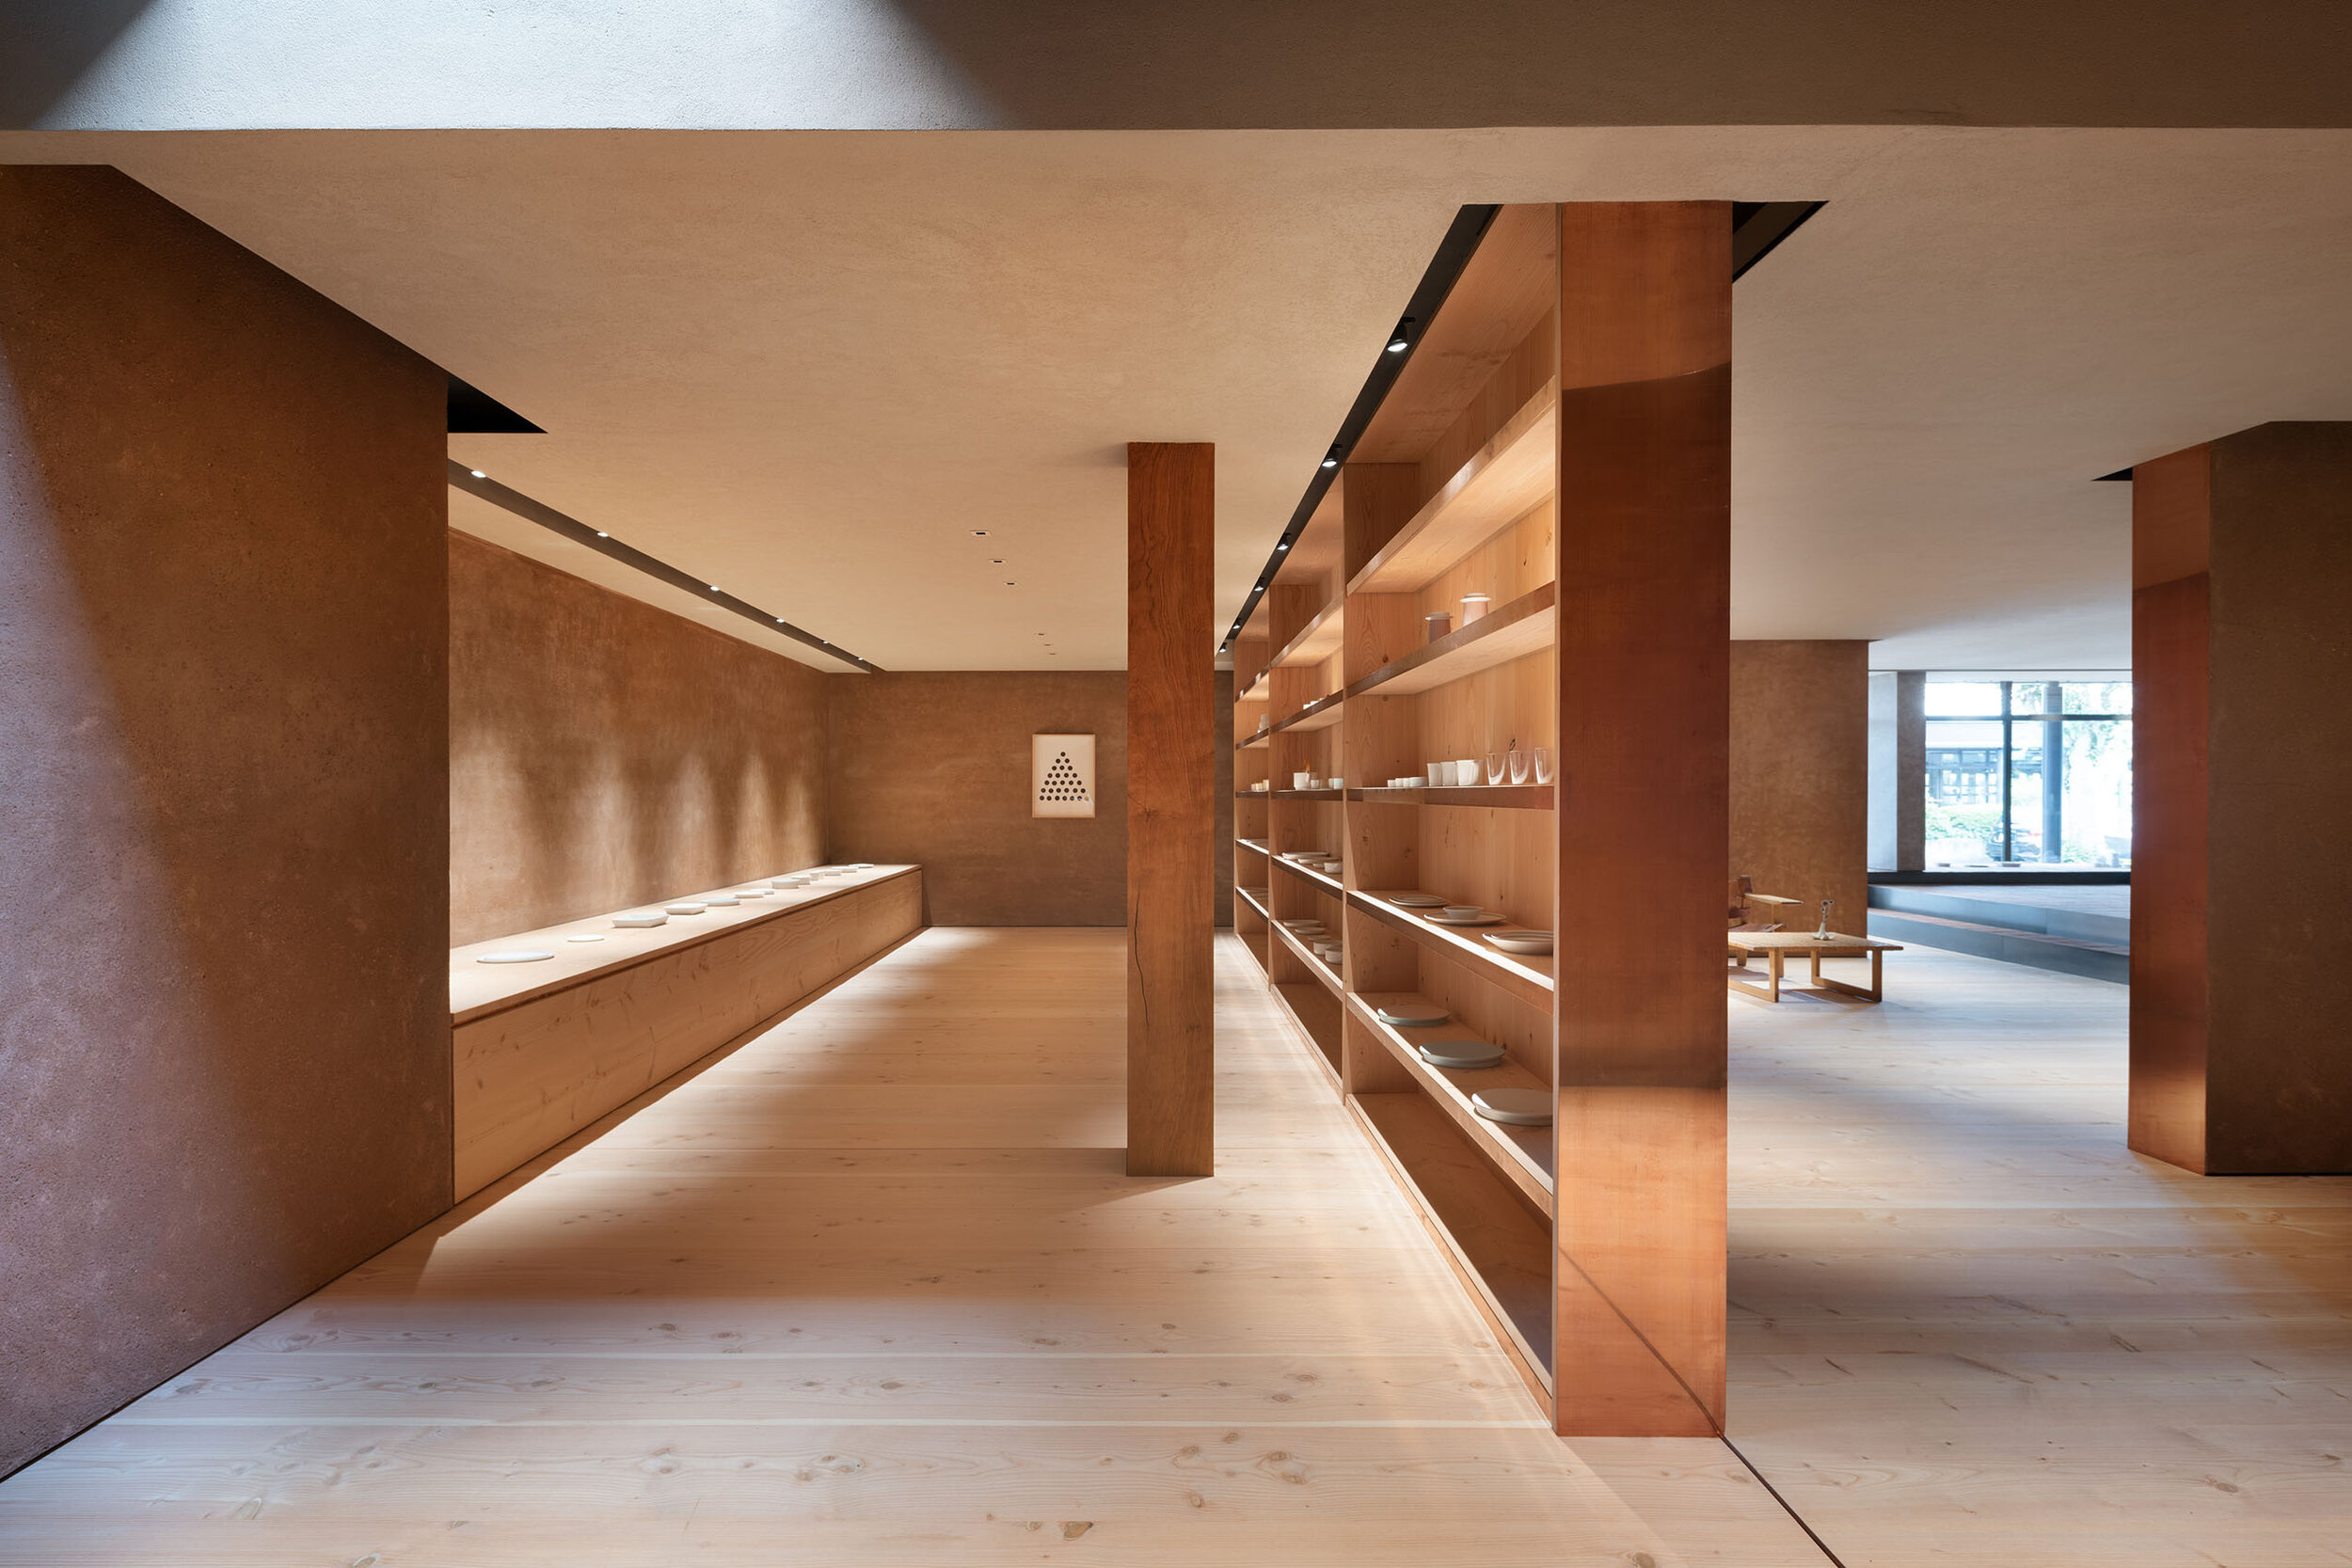  Teruhiro Yanagihara Studio has designed sophisticated space for 1616/arita japan showroom in Arita, Japan. 